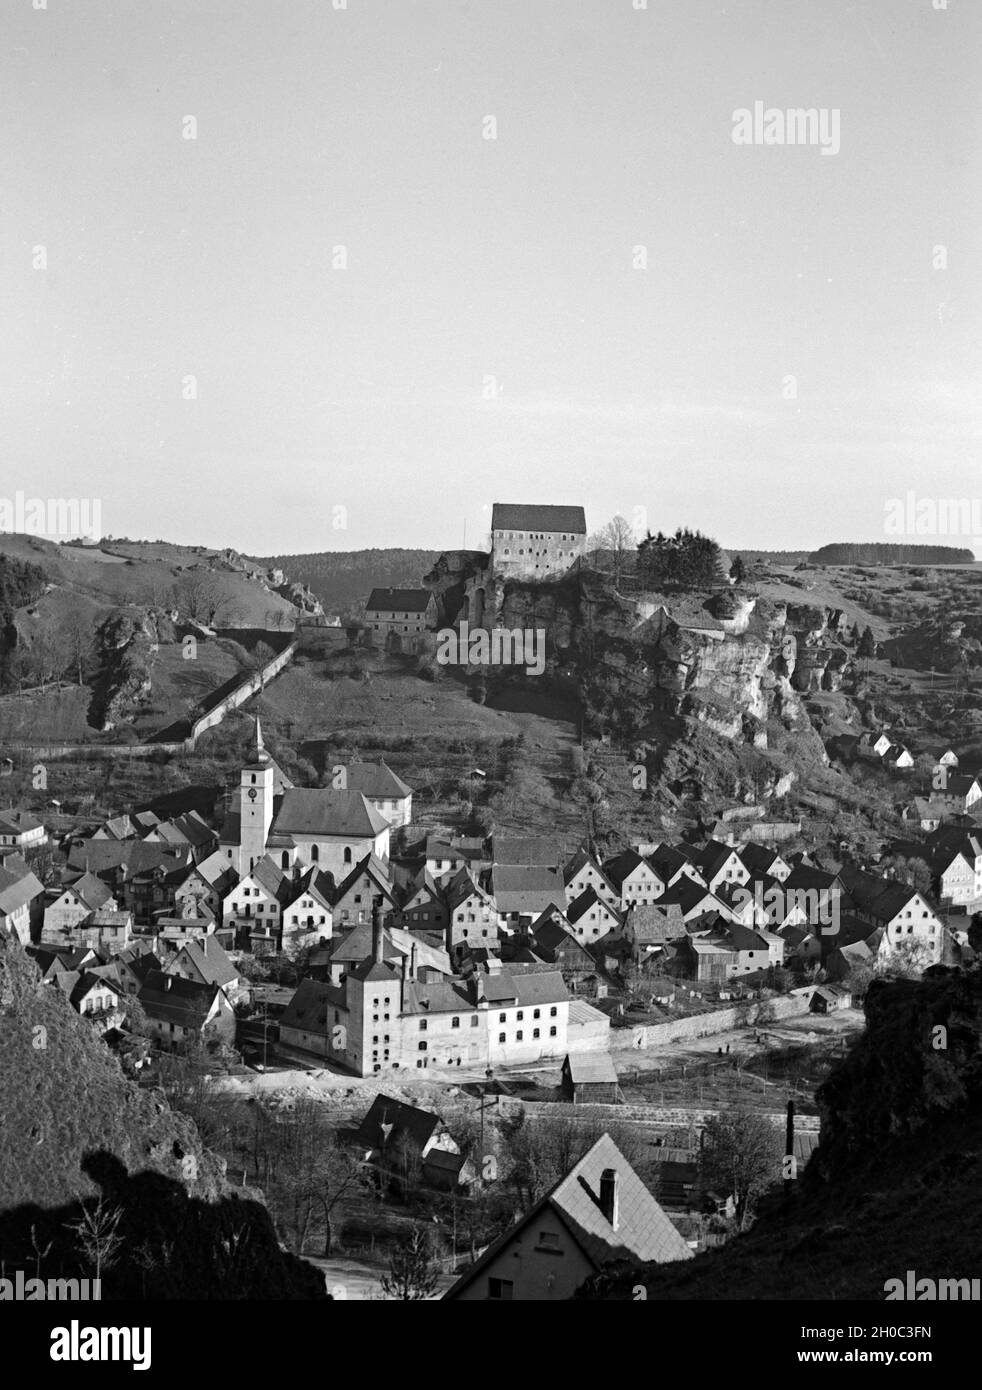 Blick auf die Ortschaft Pottenstein in Oberfranken, Deutschland 1930er Jahre. View to the town of Pottenstein in Upper Franconia, Germany 1930s. Stock Photo